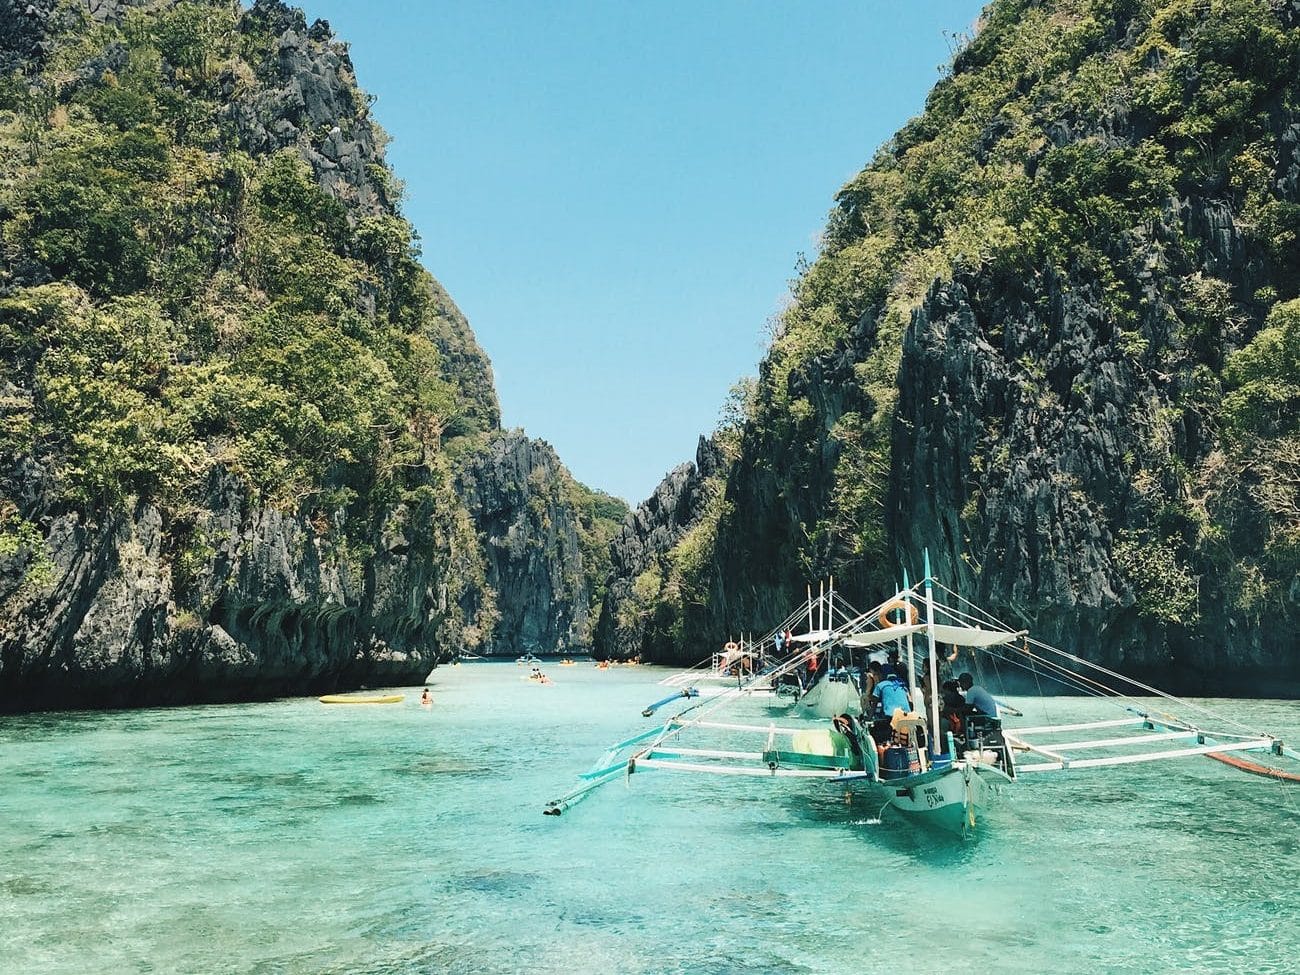 Die Philippinen sind ein wahres Paradies für Reisende, die einen preiswerten, aber traumhaften Urlaub suchen. Das Land besteht aus mehr als 7.000 Inseln, von denen jede einzelne eine Fülle von Abenteuern und Erlebnissen bietet. Der Archipel hat einige der schönsten Strände der Welt, umgeben von kristallklarem Wasser und feinem Sand. Wer auf der Suche nach einem Abenteuer ist, kann in der atemberaubenden Unterwasserwelt der Philippinen tauchen, die eine unglaubliche Vielfalt an Meereslebewesen und Korallenriffen bietet.